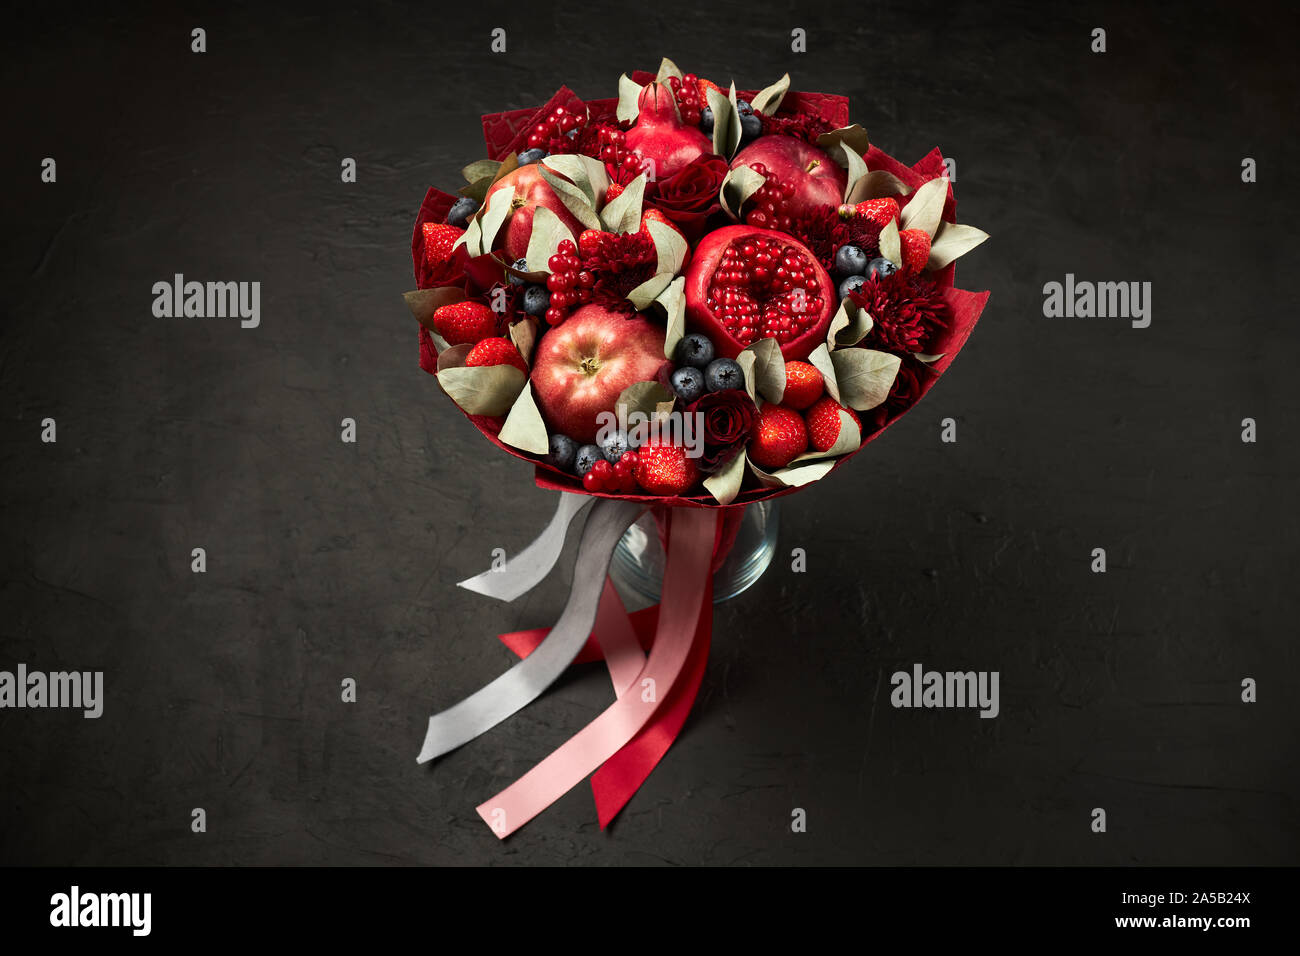 Composizione unica nella forma di un bouquet di melograni, mele, fragole, ribes rosso e rose su sfondo nero Foto Stock